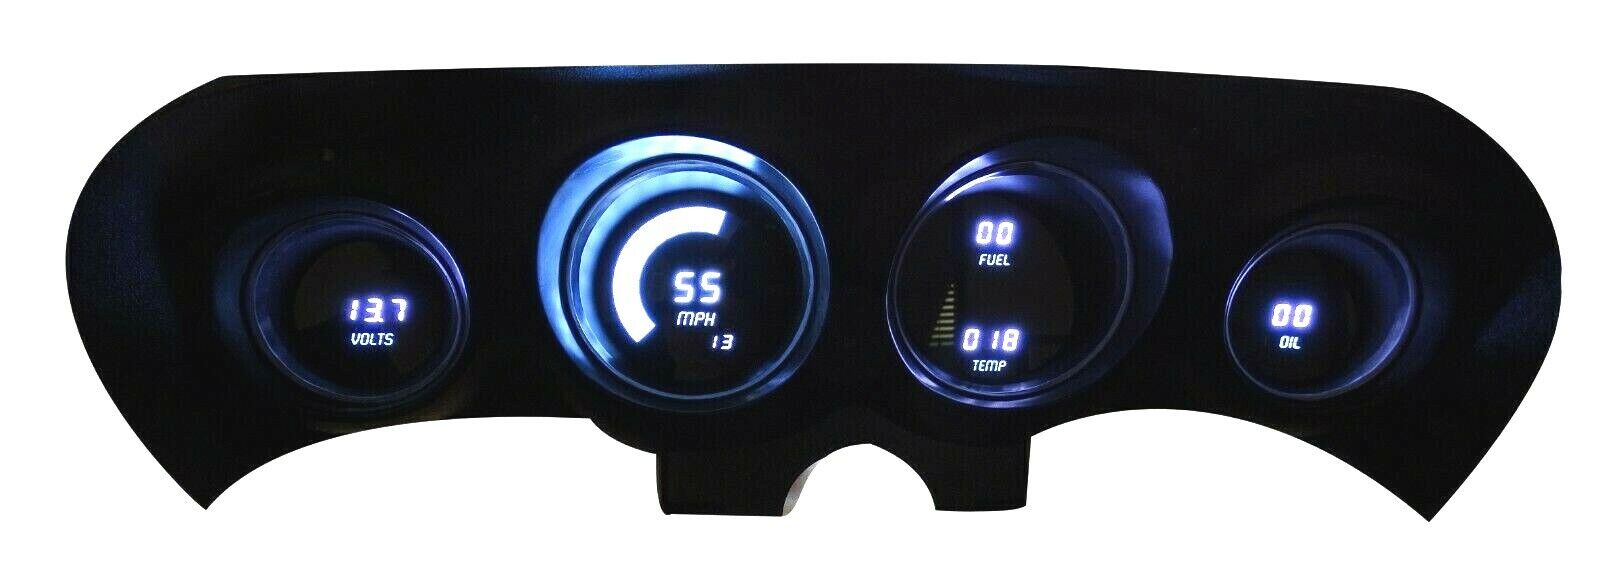 69-70 Ford Mustang LED Digital Panel White LED Gauges Lifetime Warranty